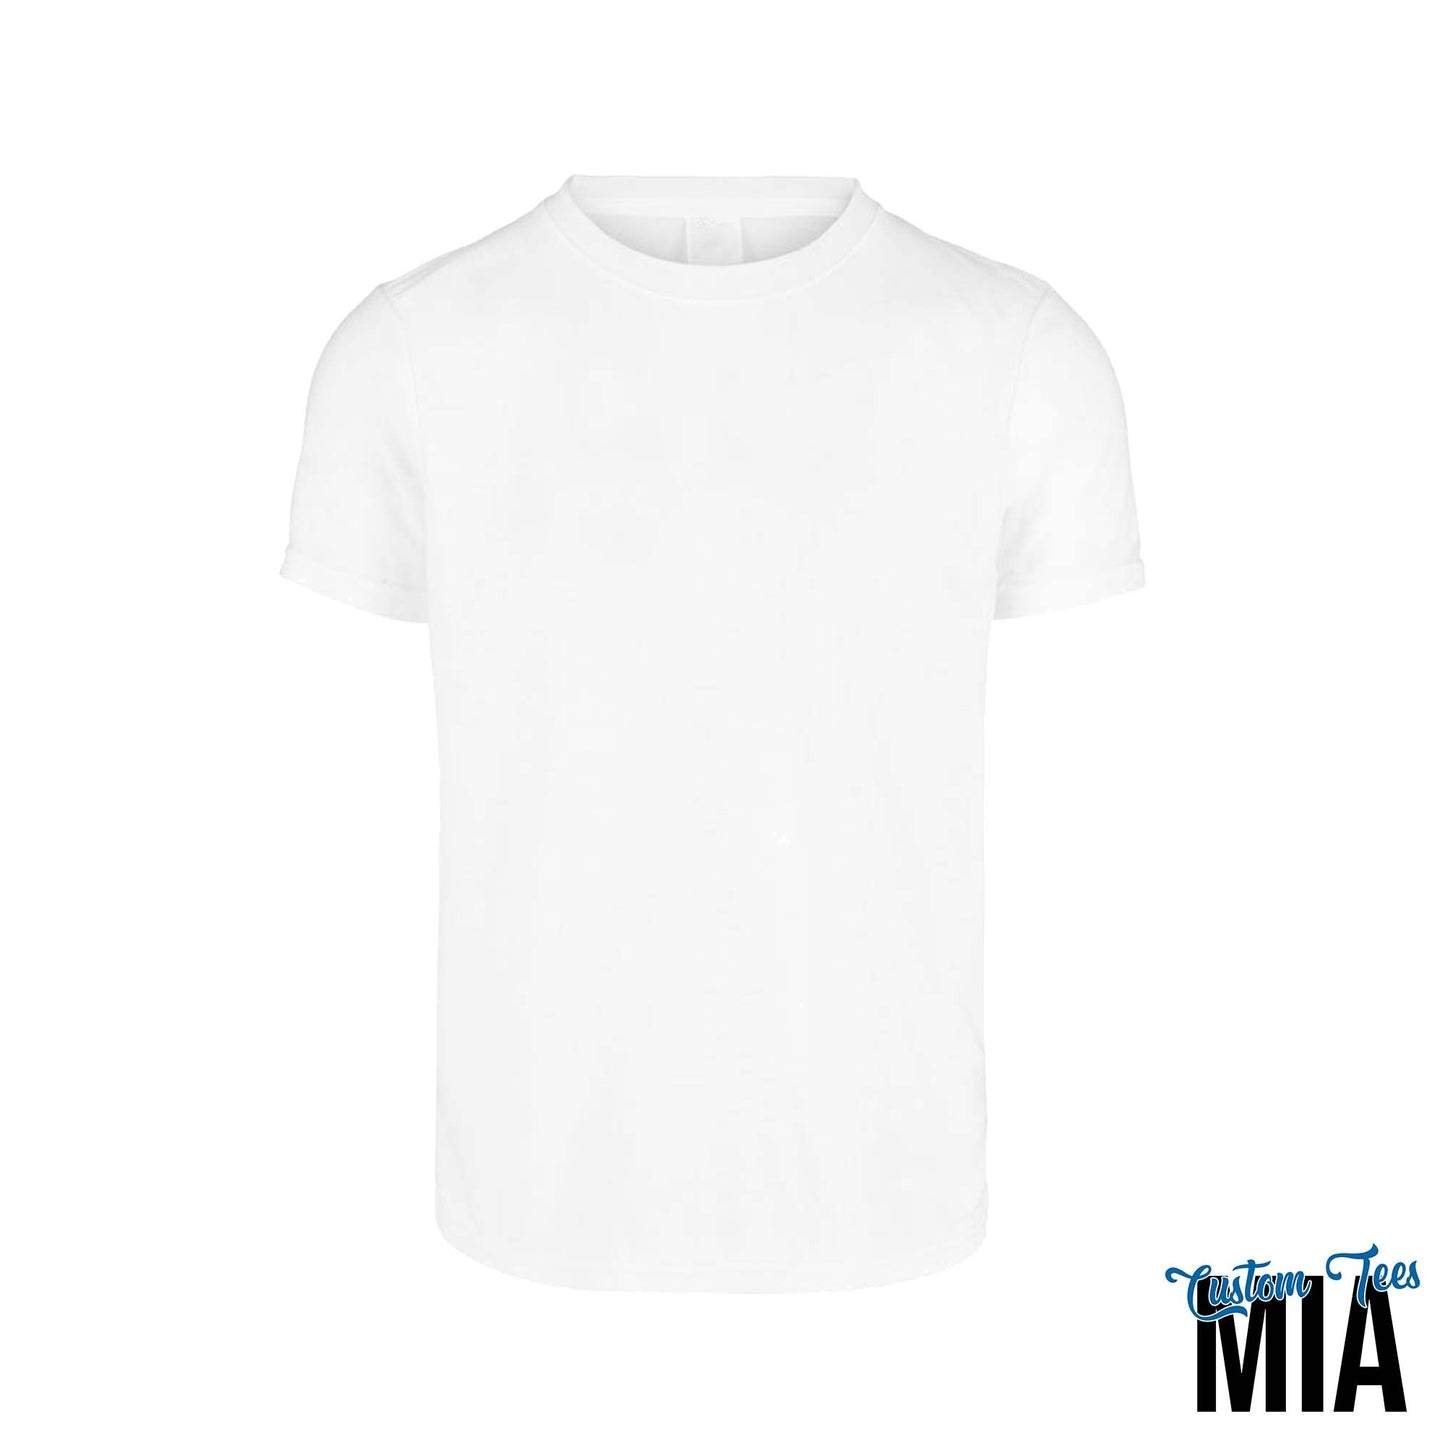 Unisex 100% Polyester Sublimation Crew Neck Short Sleeve T-Shirt